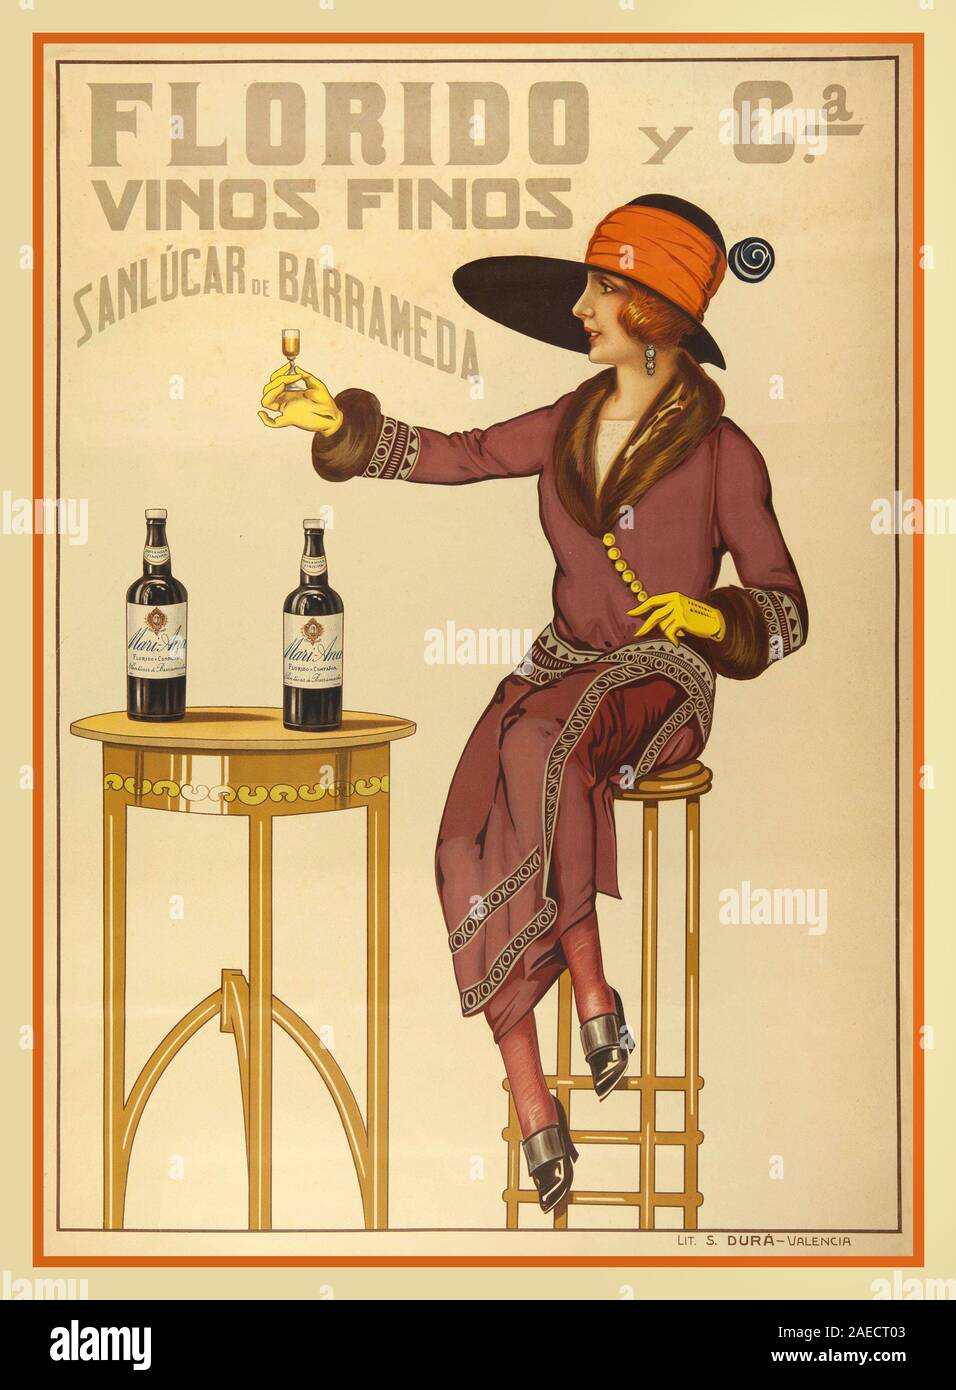 Vintage Sherry Fino Vinos Poster 1900 Florido y Cª Vinos y Finos, Sanlucar de Barrameda. - Valencia Spanien Stockfoto